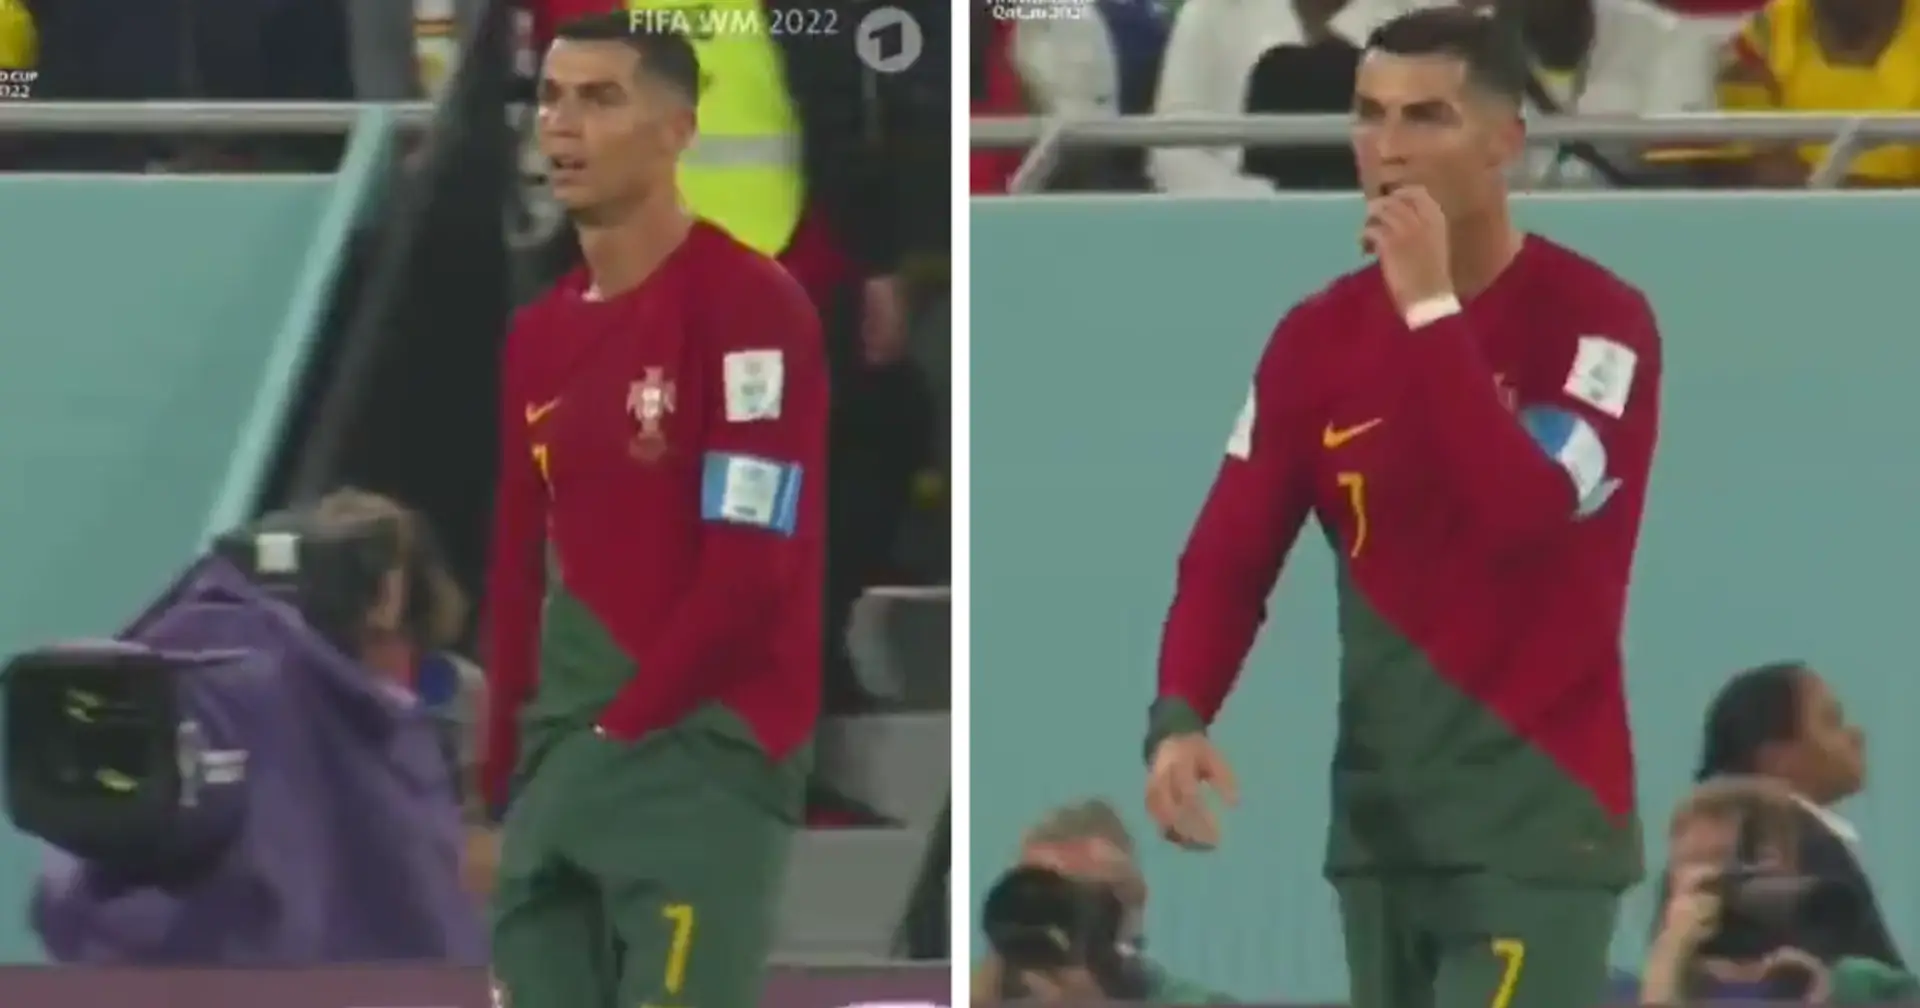 Während des Spiels gegen Ghana holte Ronaldo etwas aus seiner Unterwäsche und aß es (VIDEO) 😋